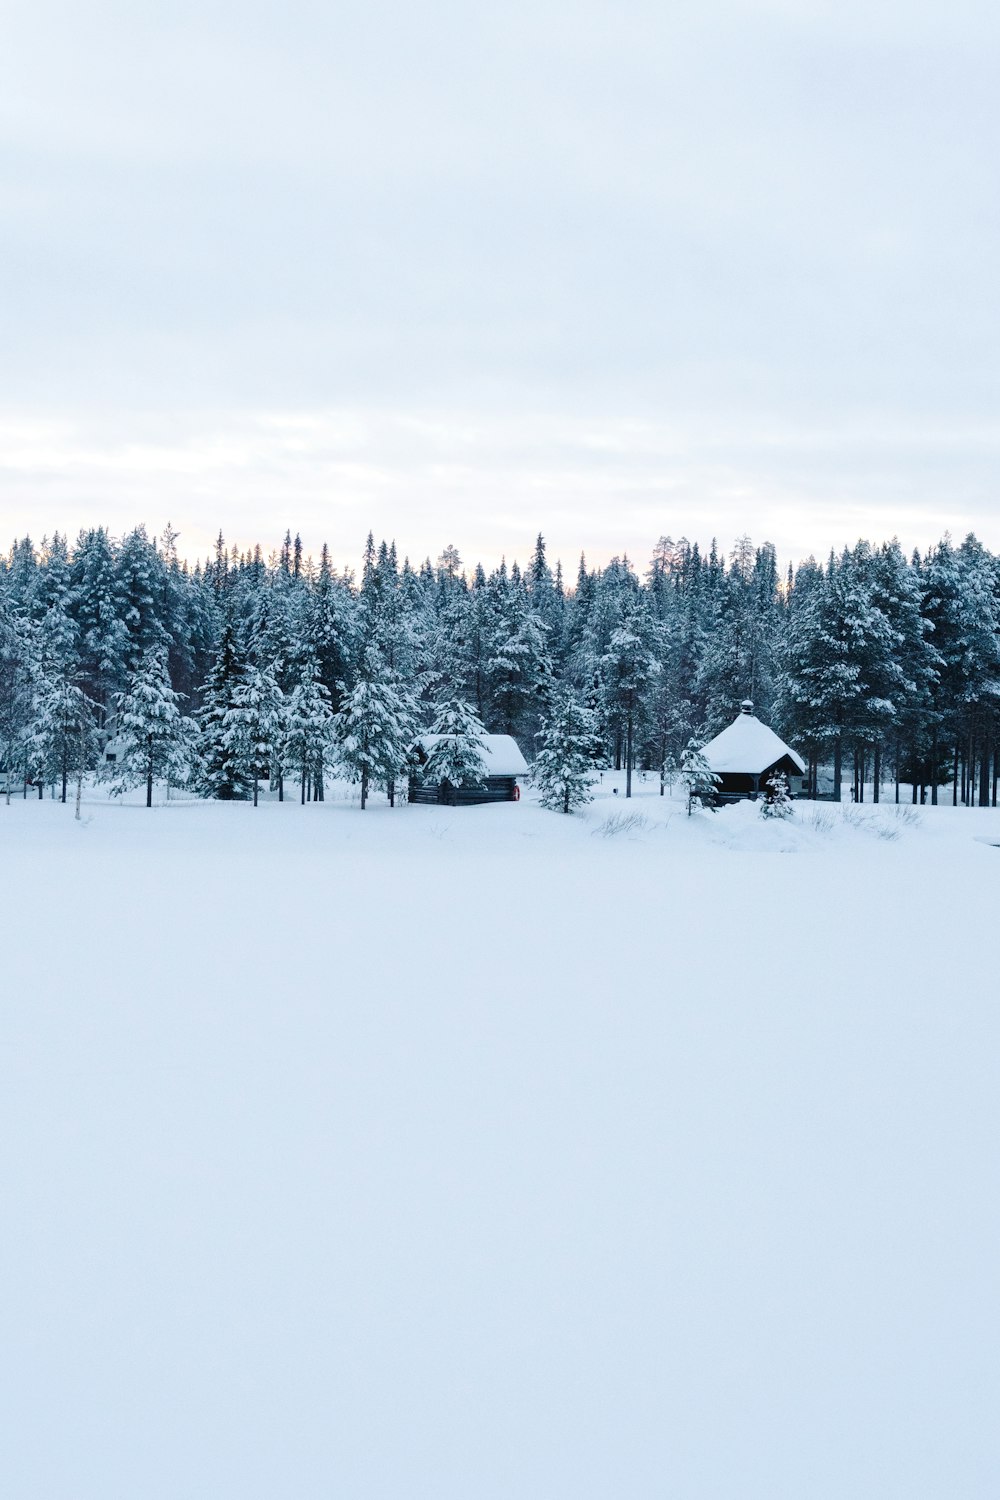 casas e pinheiros no campo de neve durante o dia